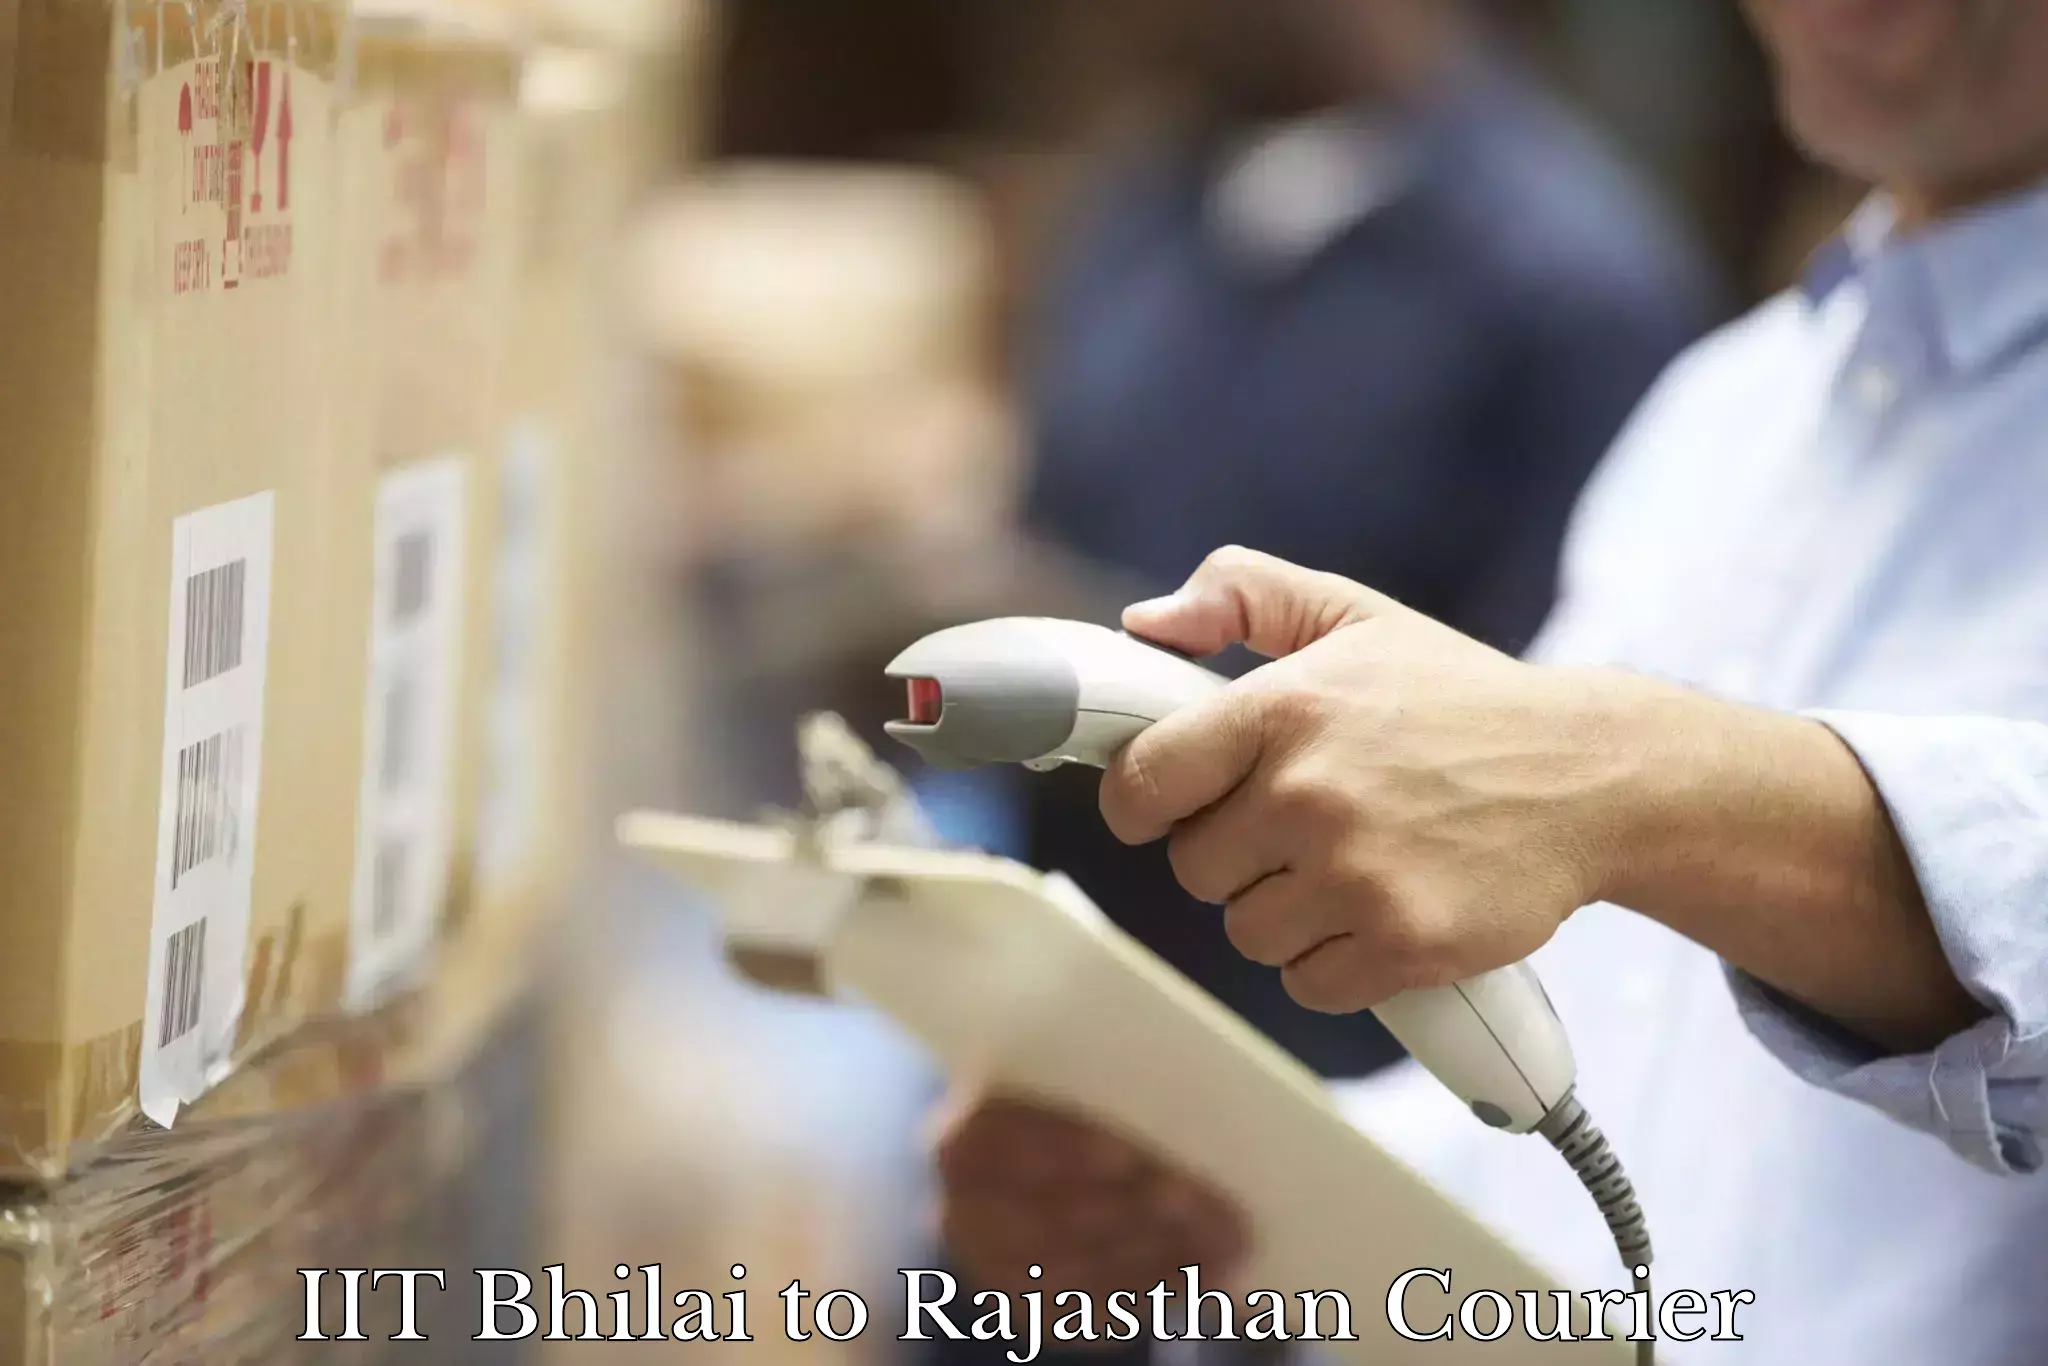 Full-service courier options IIT Bhilai to Deshnok